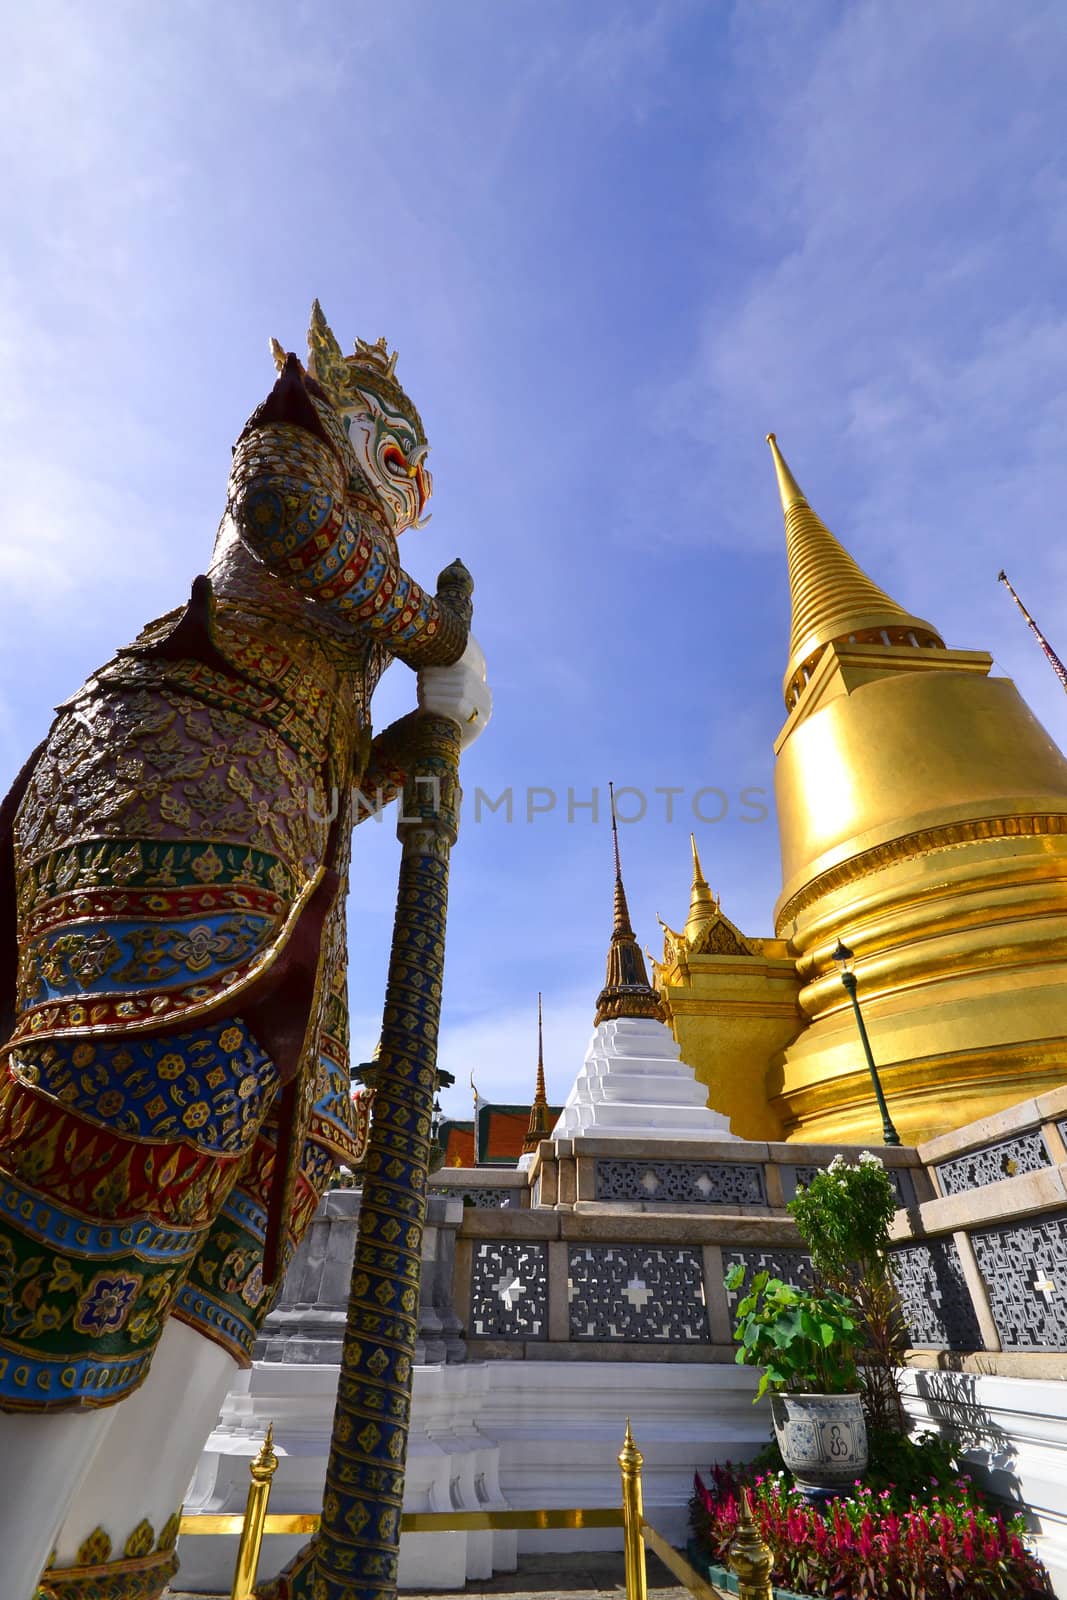 Giant sculpture in Wat Phra Kaew in thailand